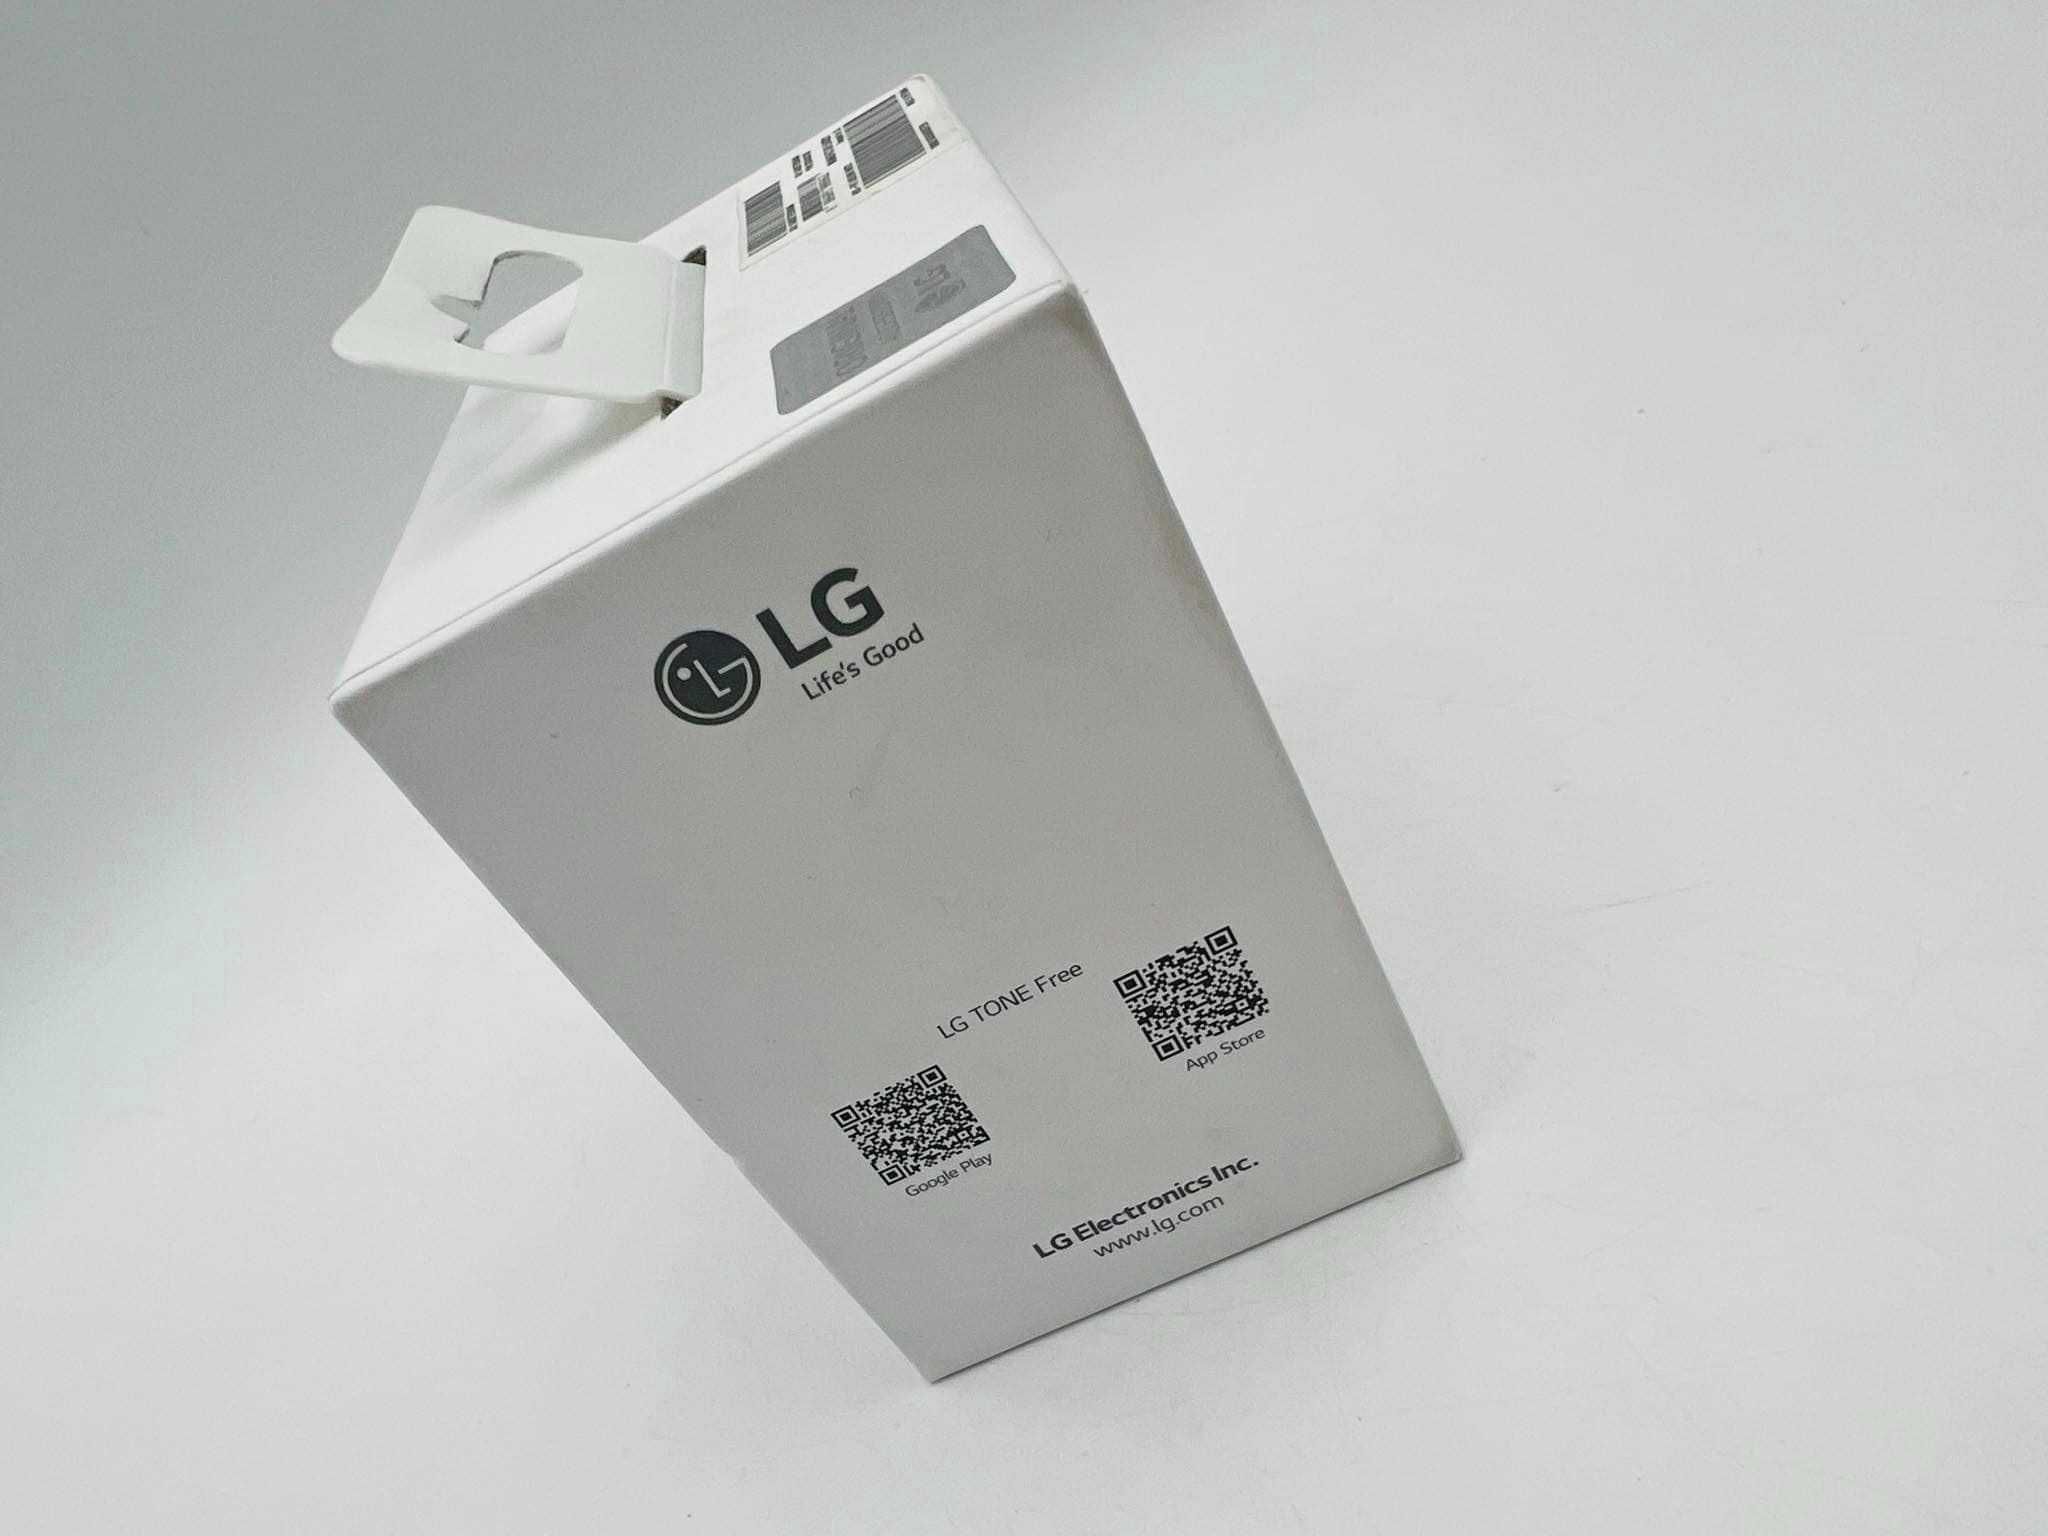 Słuchawki bezprzewodowe douszne LG Tone Free FN7 Biały